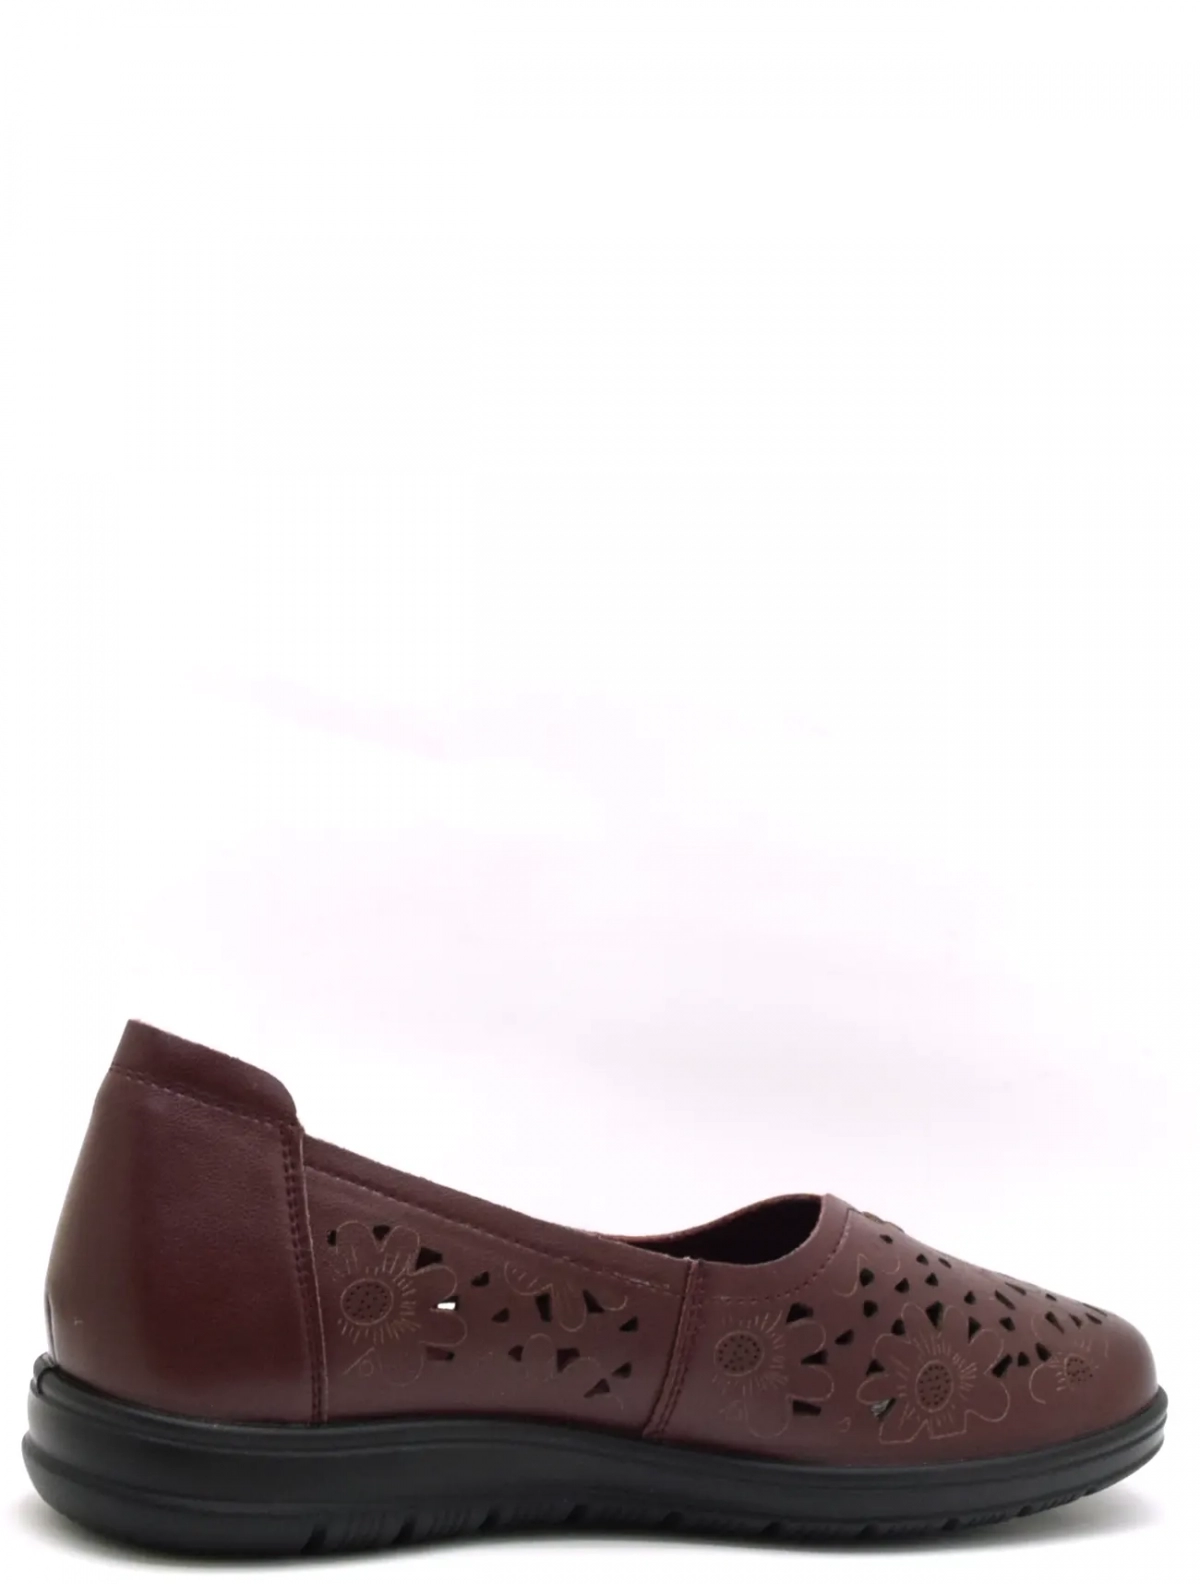 Baden CV065-121 женские туфли